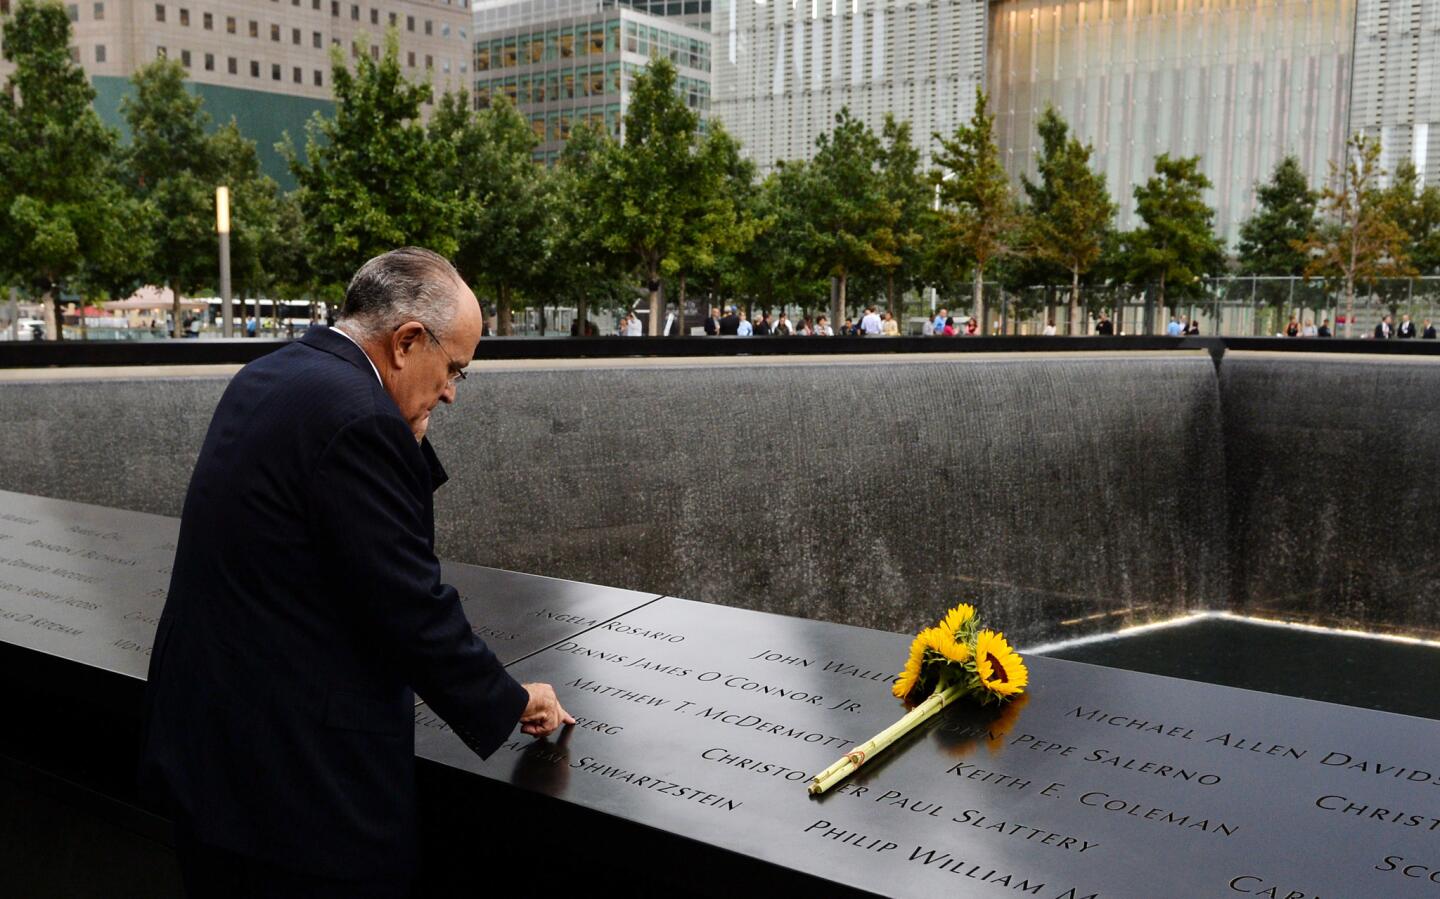 9/11 commemoration ceremonies